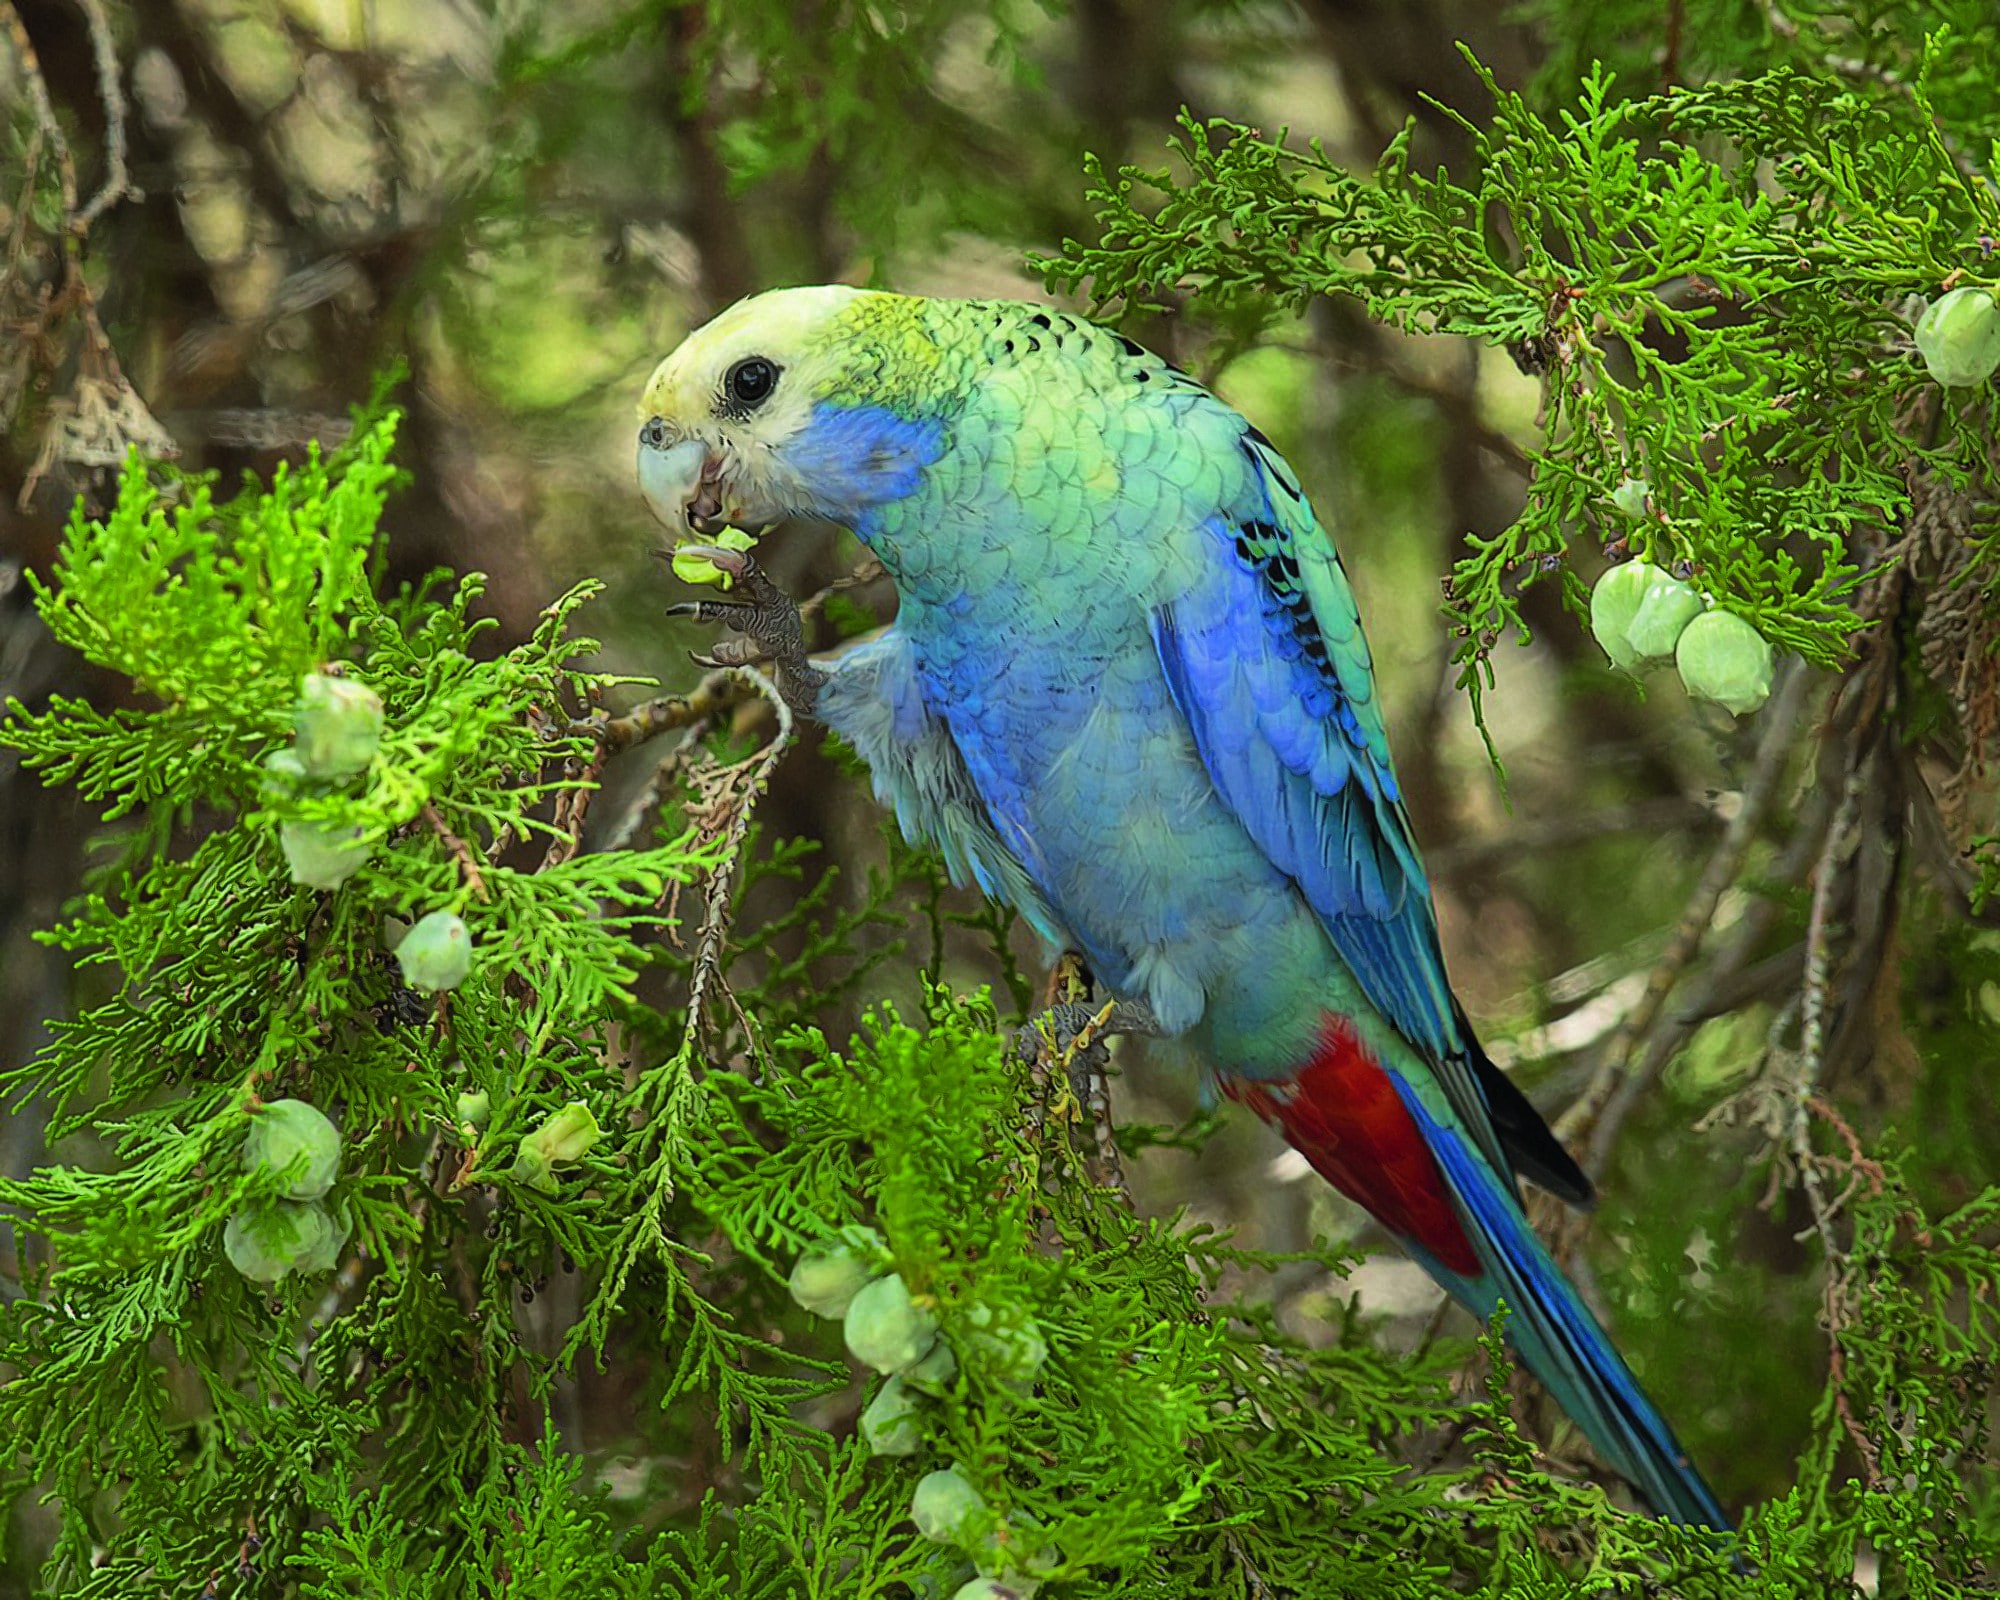 A tonalidade admirável da plumagem do pássaro de bico torto pertencente à família dos psitacídeos, que inclui periquitos e papagaios, é bastante valorizada. (Foto: Creative commons / JJ Harrison)